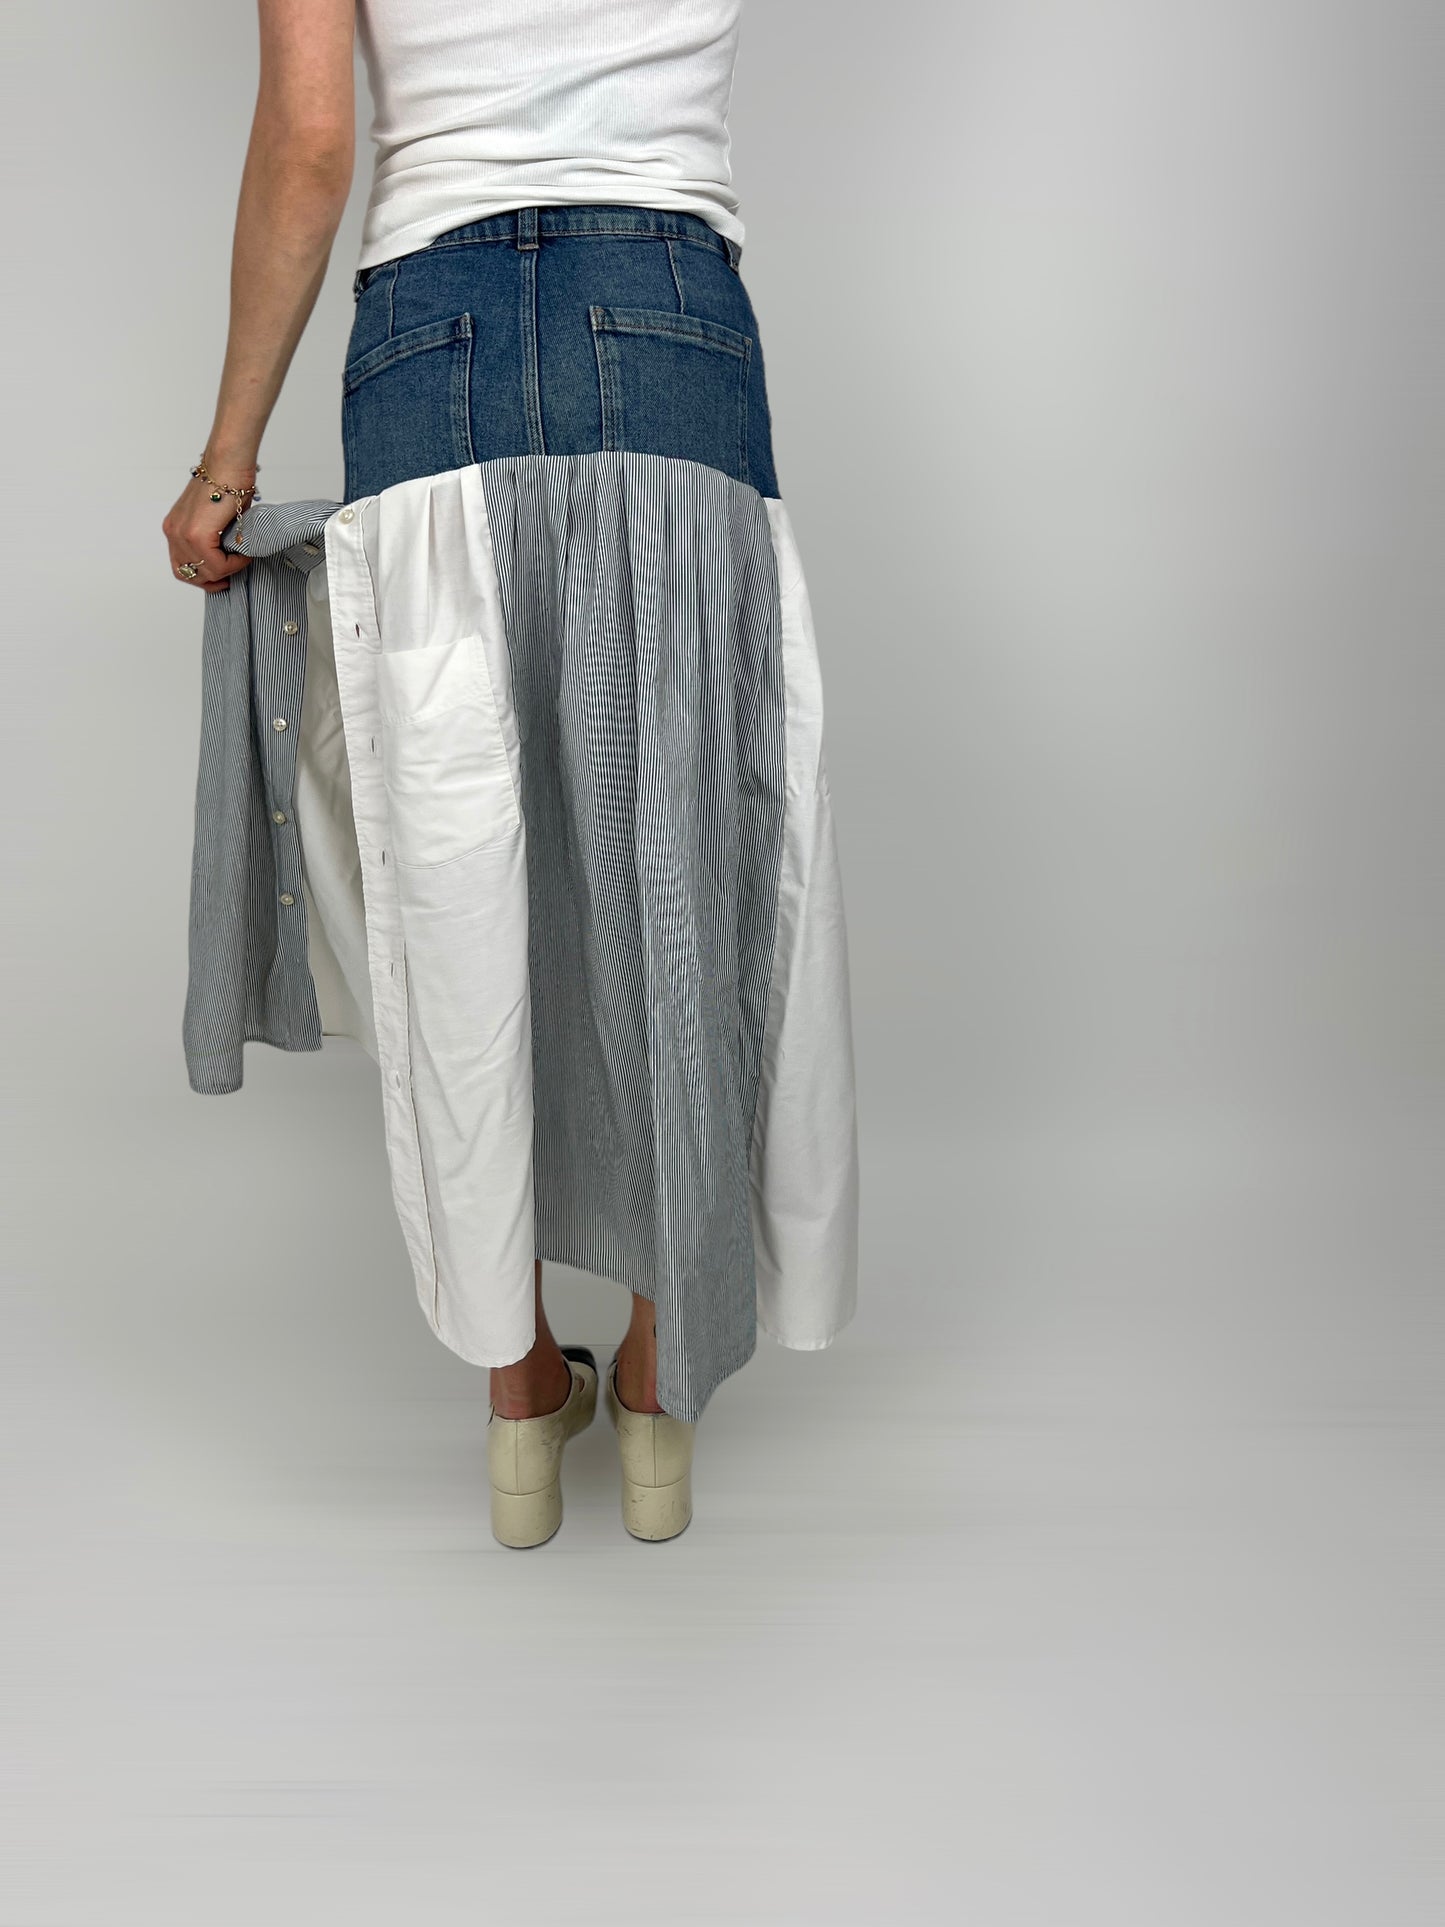 June Skirt N°9